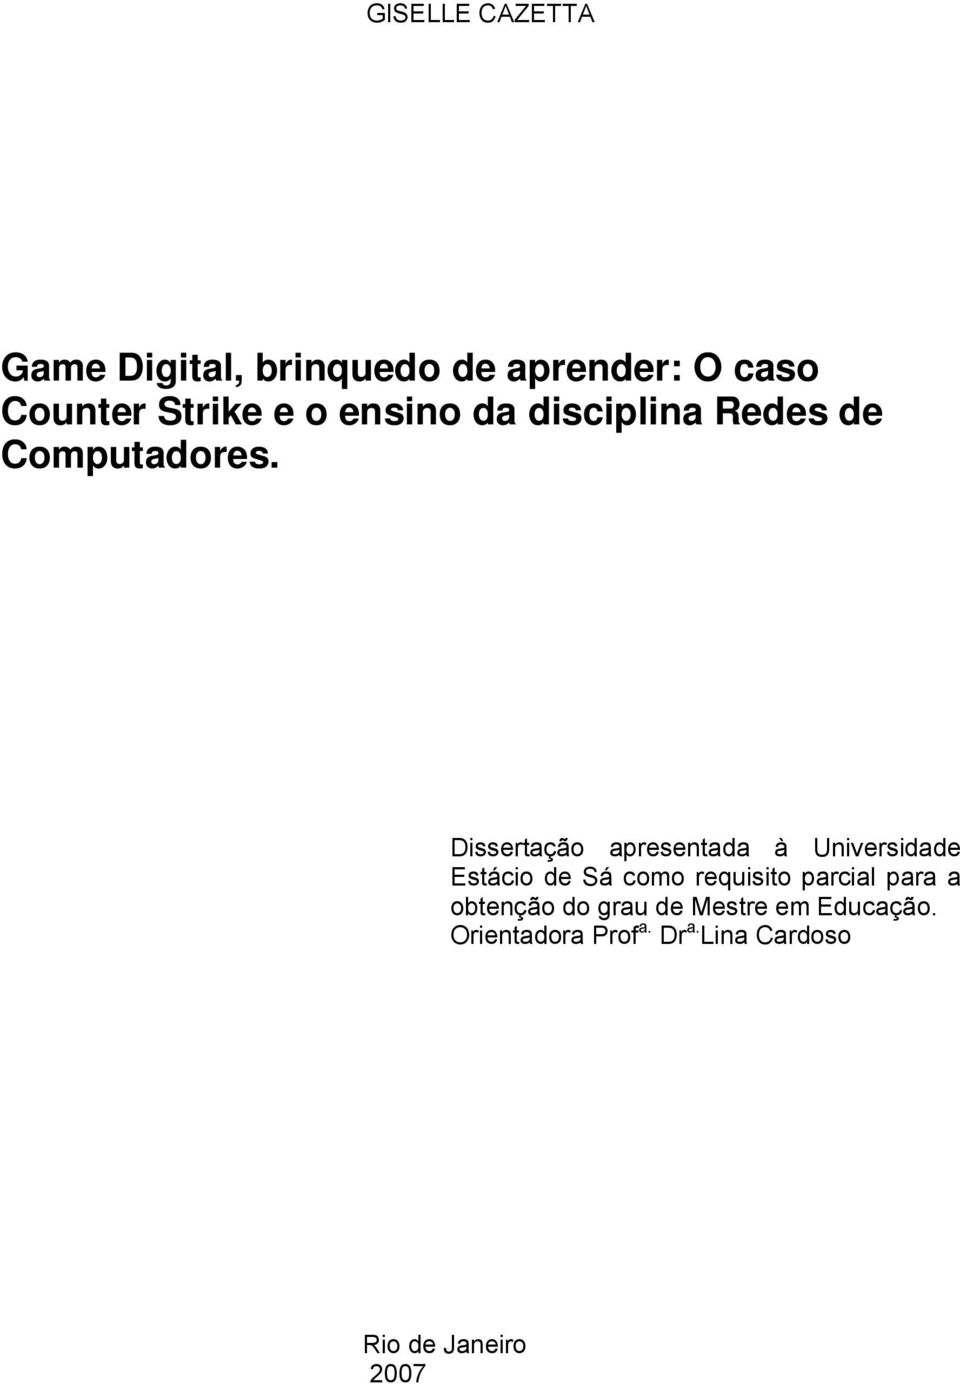 Dissertação apresentada à Universidade Estácio de Sá como requisito parcial